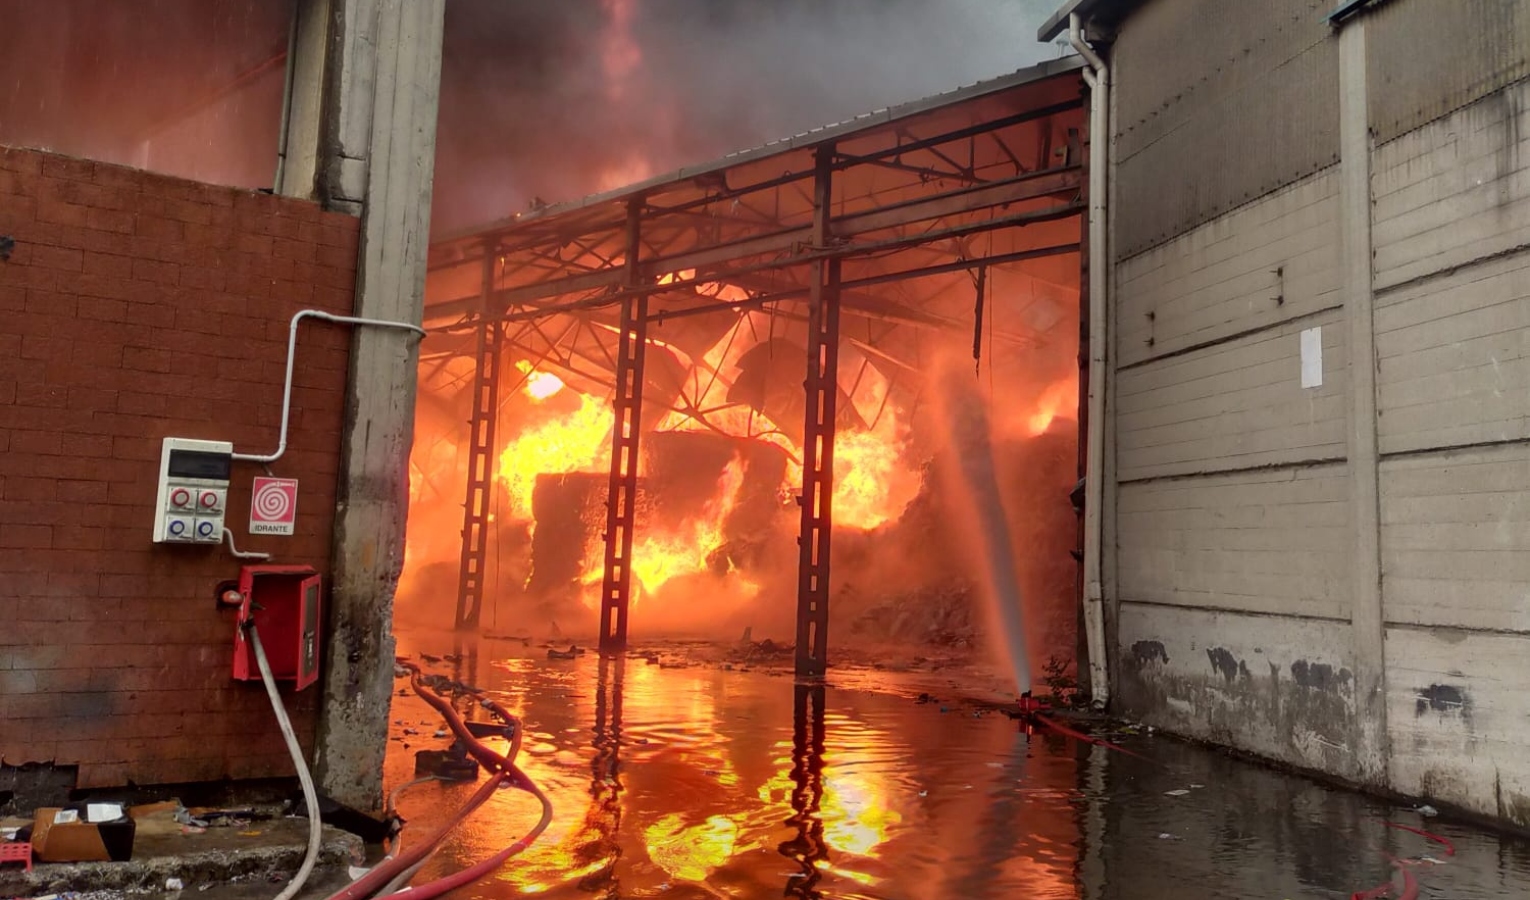 Incendio azienda riciclo Sant'Olcese, aperta indagine per individuare le cause